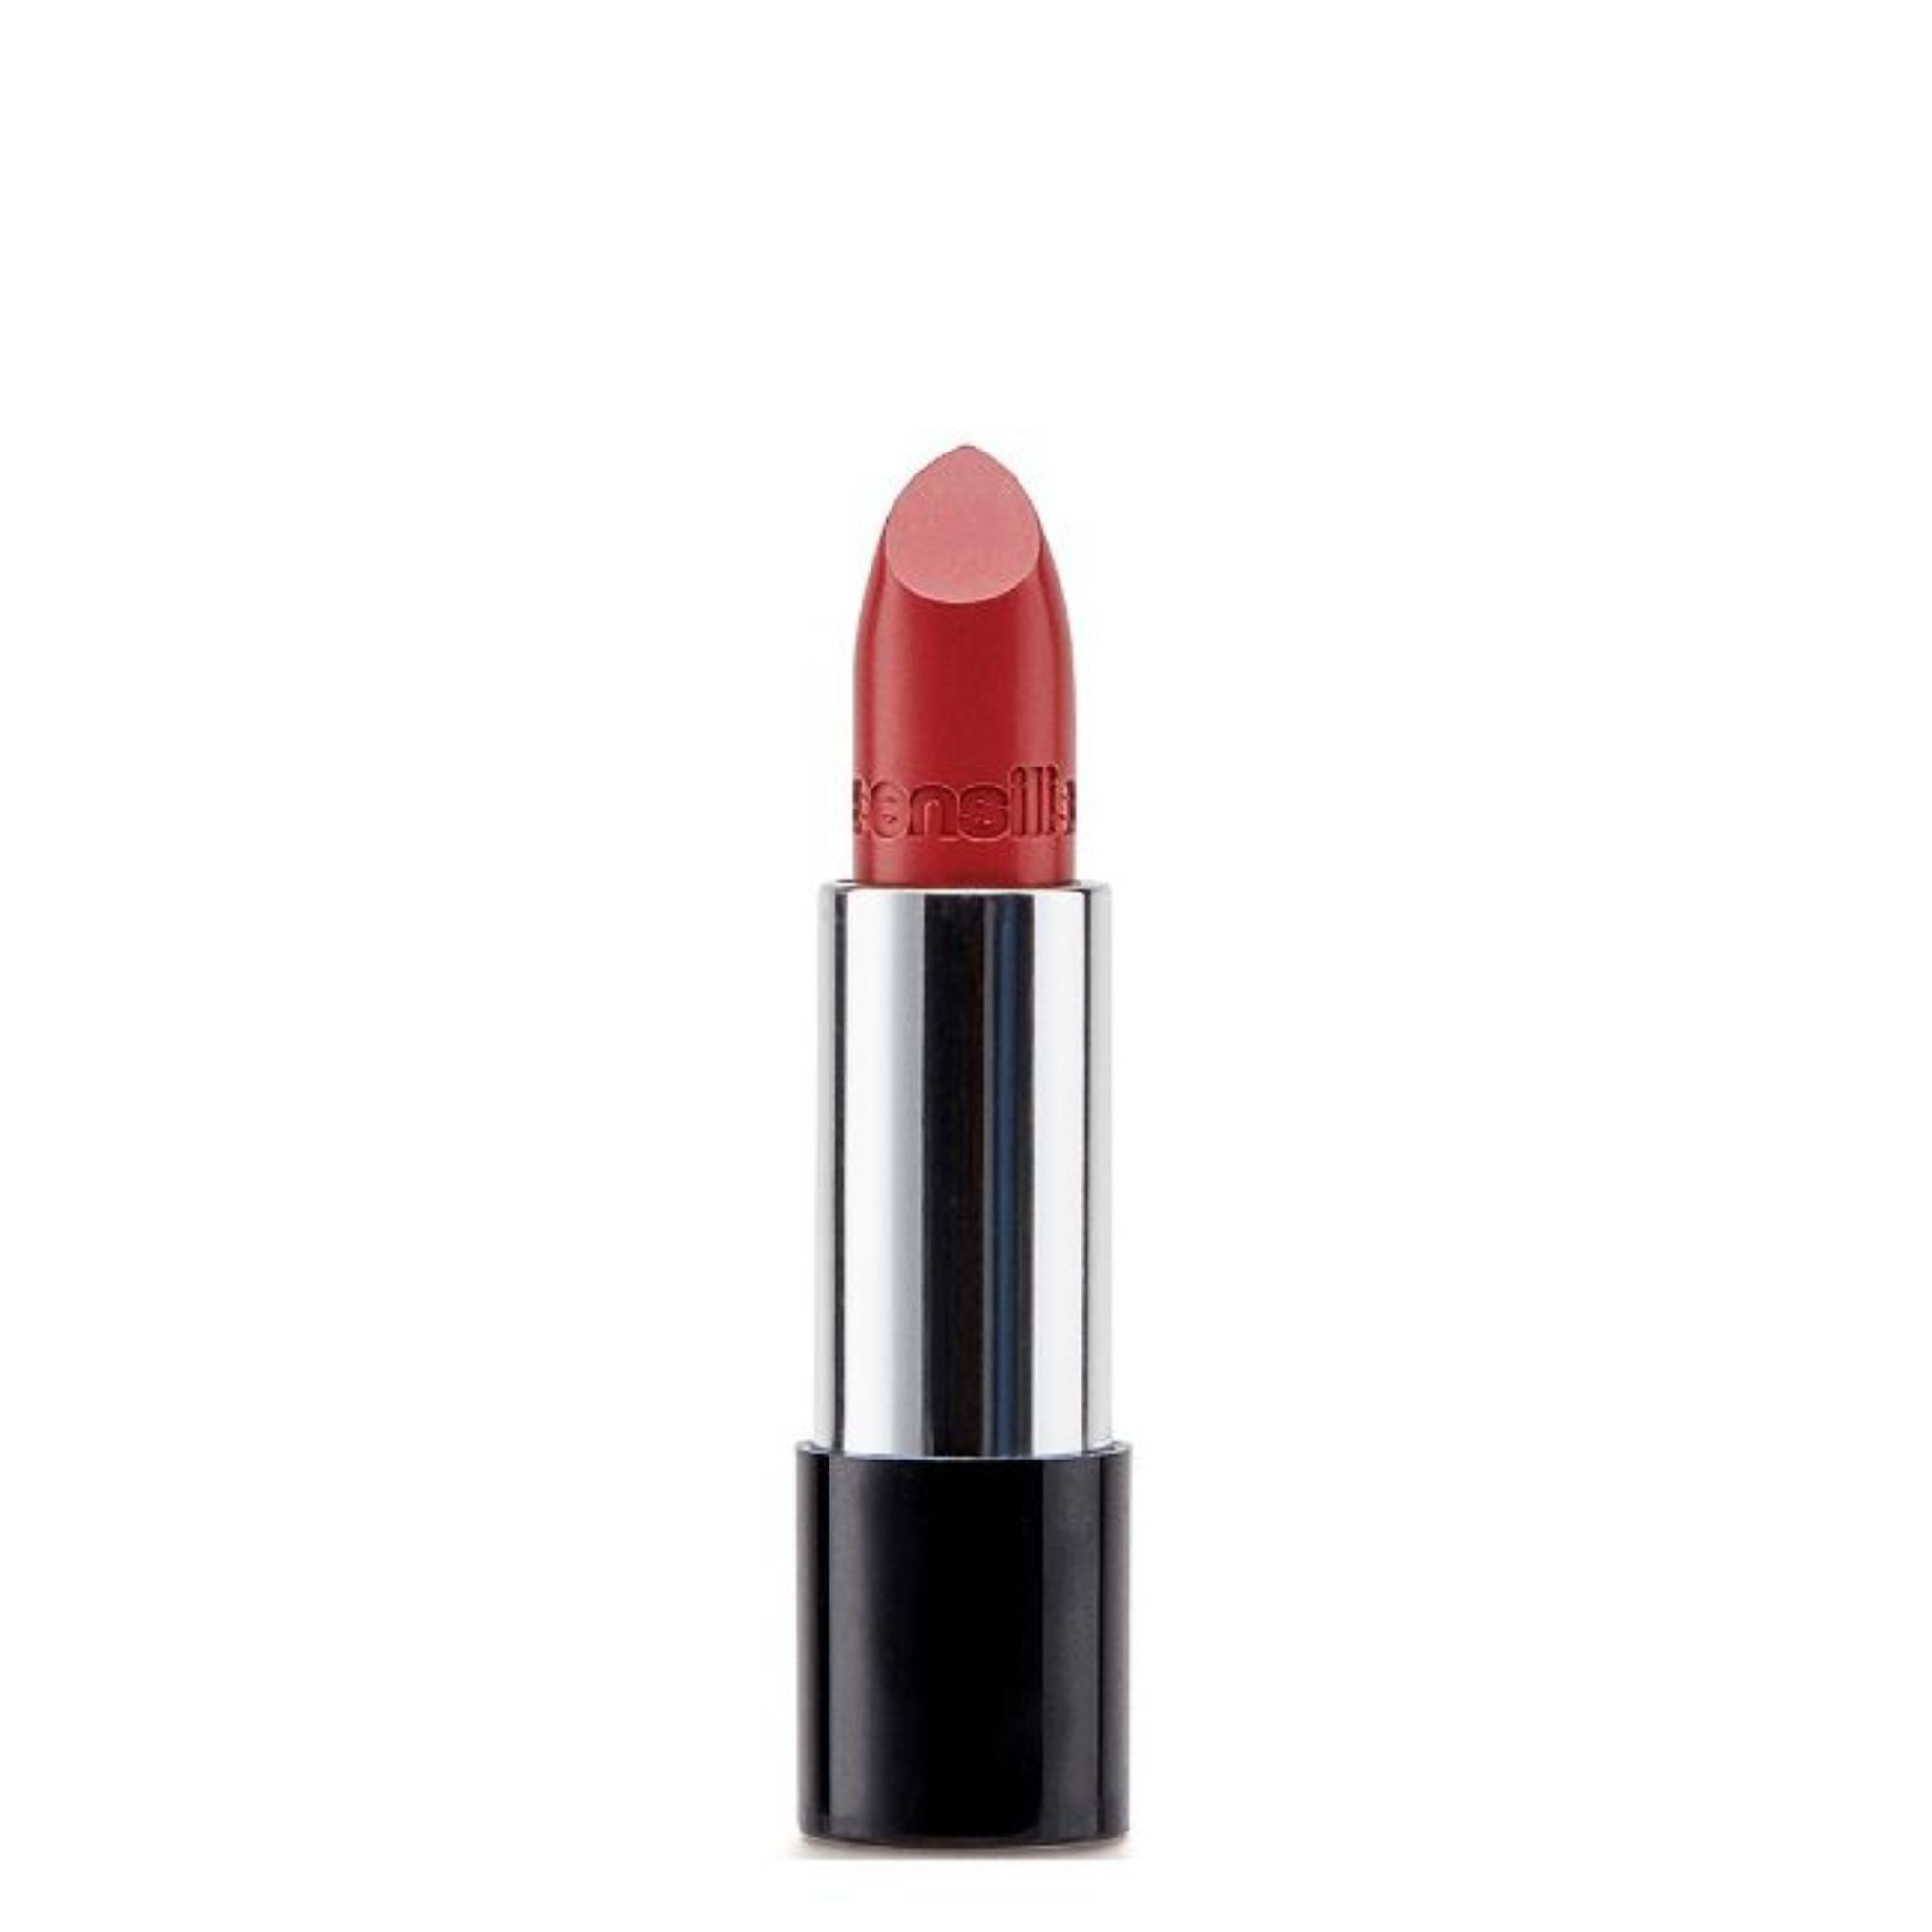 Sensilis Velvet Satin Lipstick 207 Terracota 3,5ml